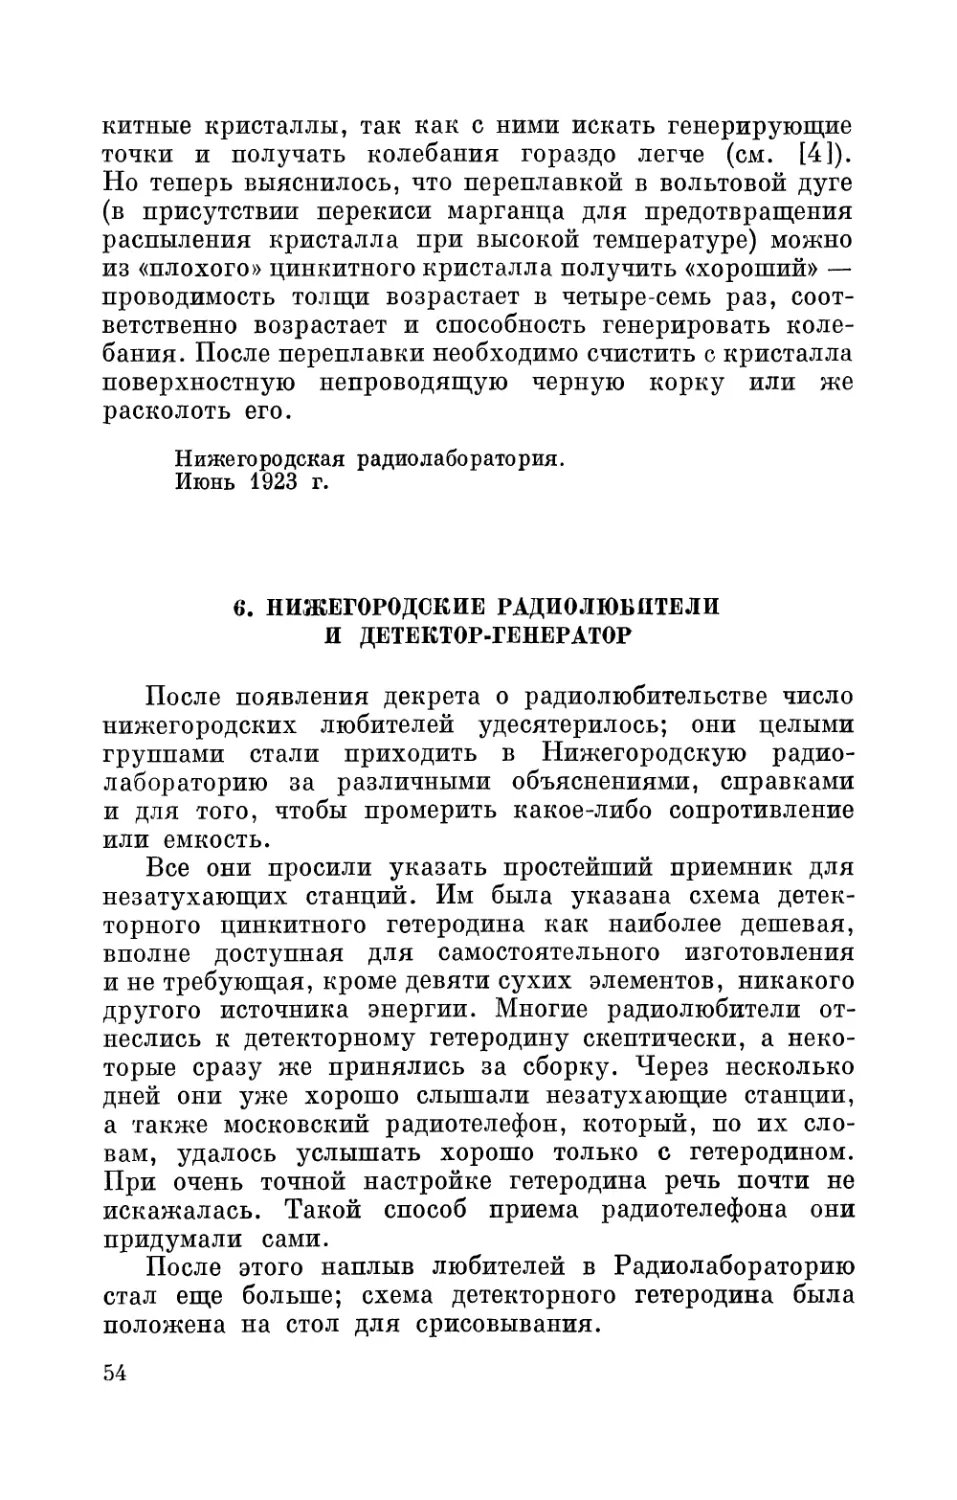 6. Нижегородские радиолюбители и детектор-генератор